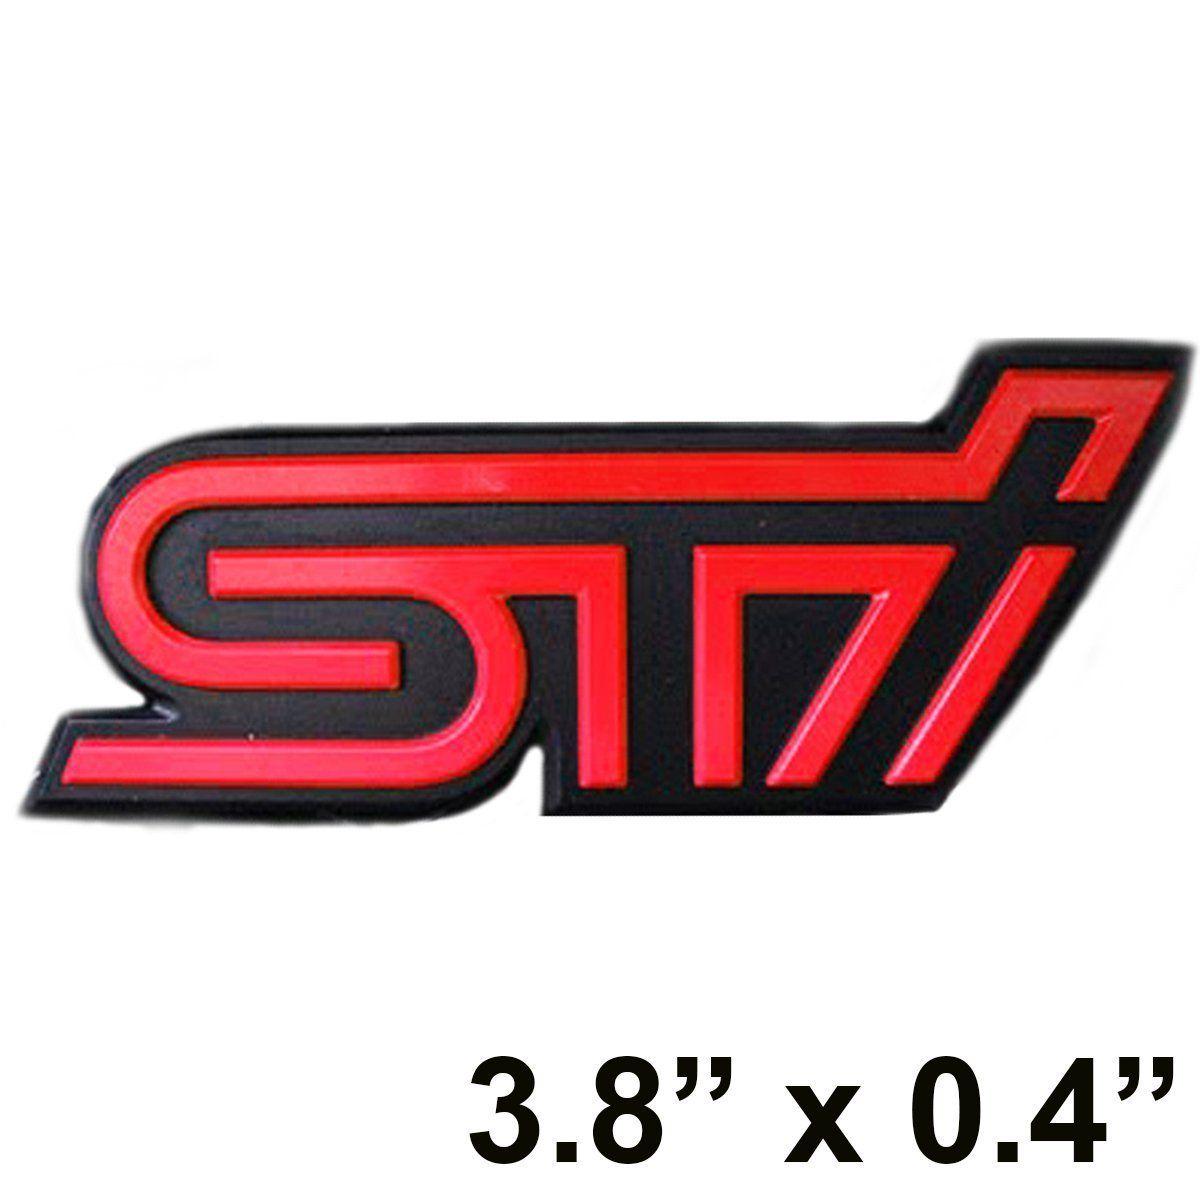 Impreza WRX STI Logo - JDM Red STi Logo Emblem Badge Sticker For Subaru WRX Sti Impreza GDB